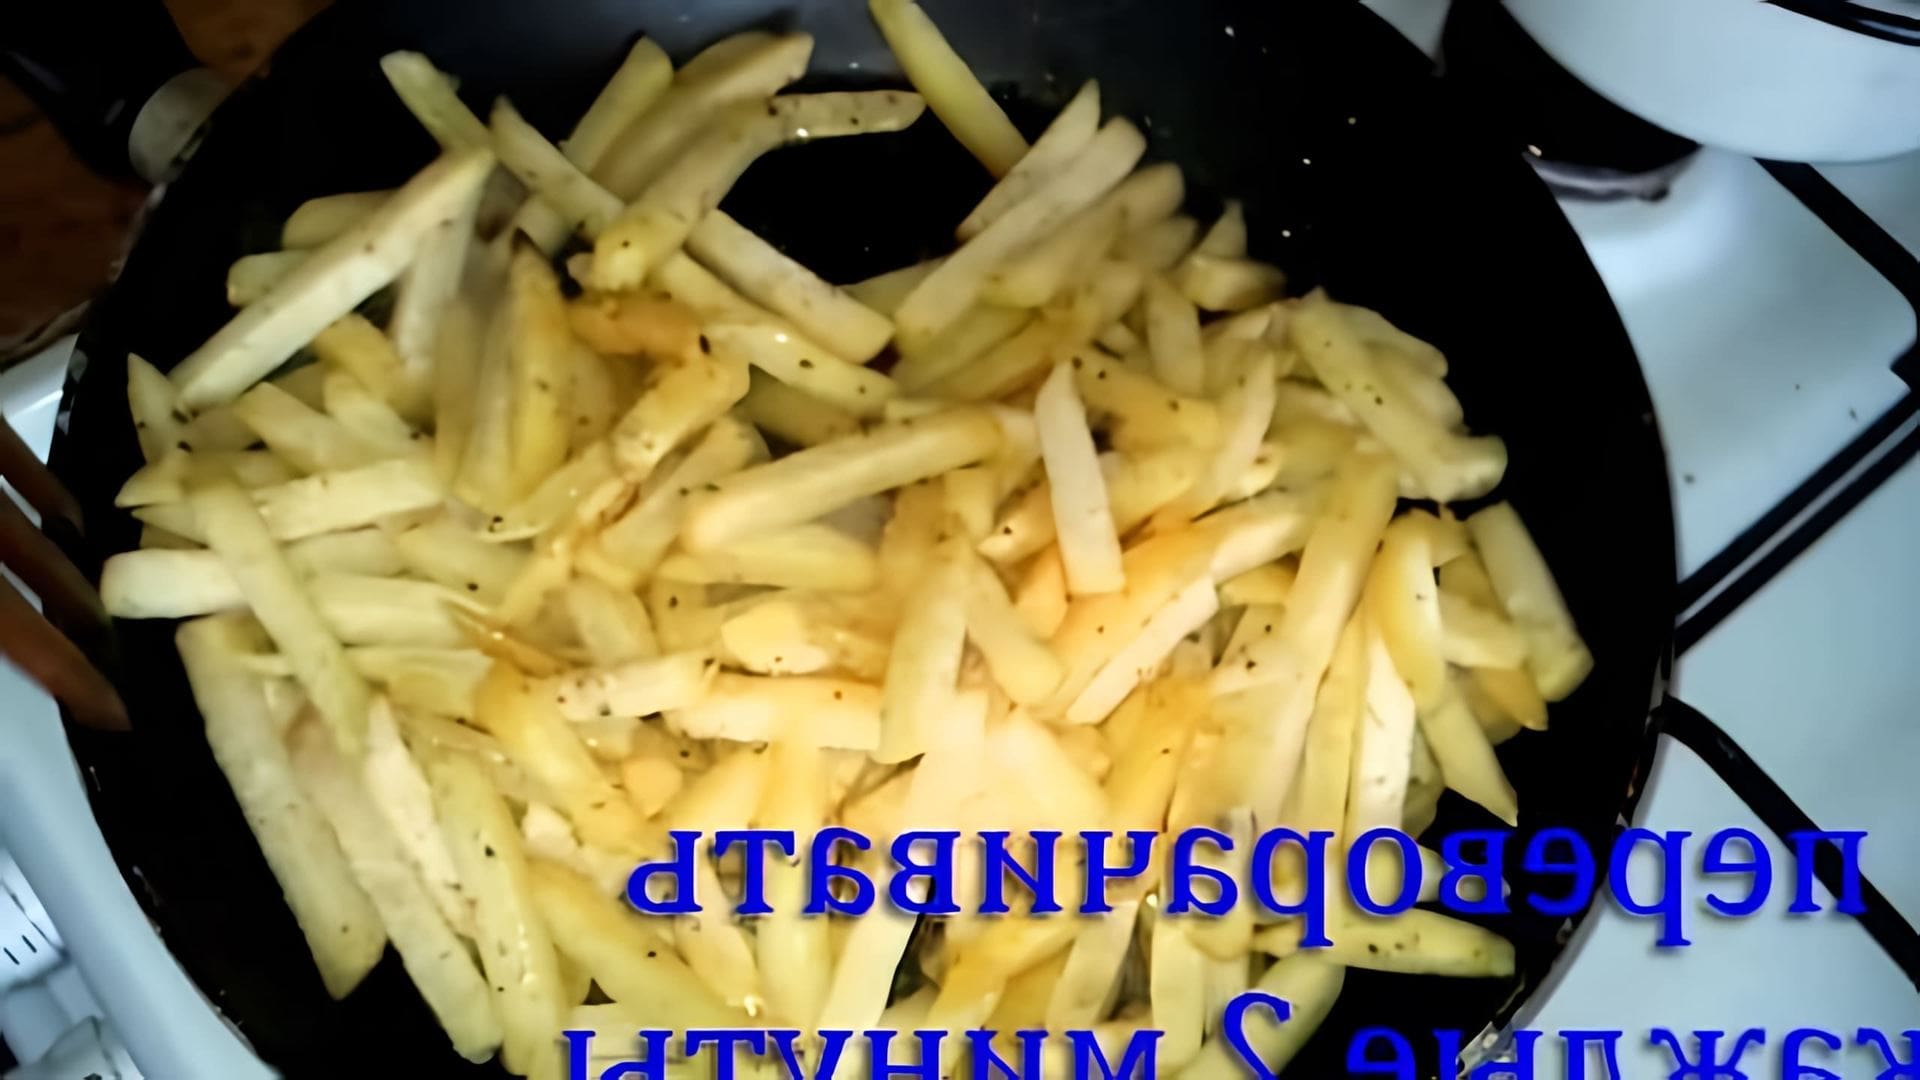 Вкусный и питательный картофель фри на сковороде - это видео-ролик, который демонстрирует процесс приготовления картофеля фри на сковороде